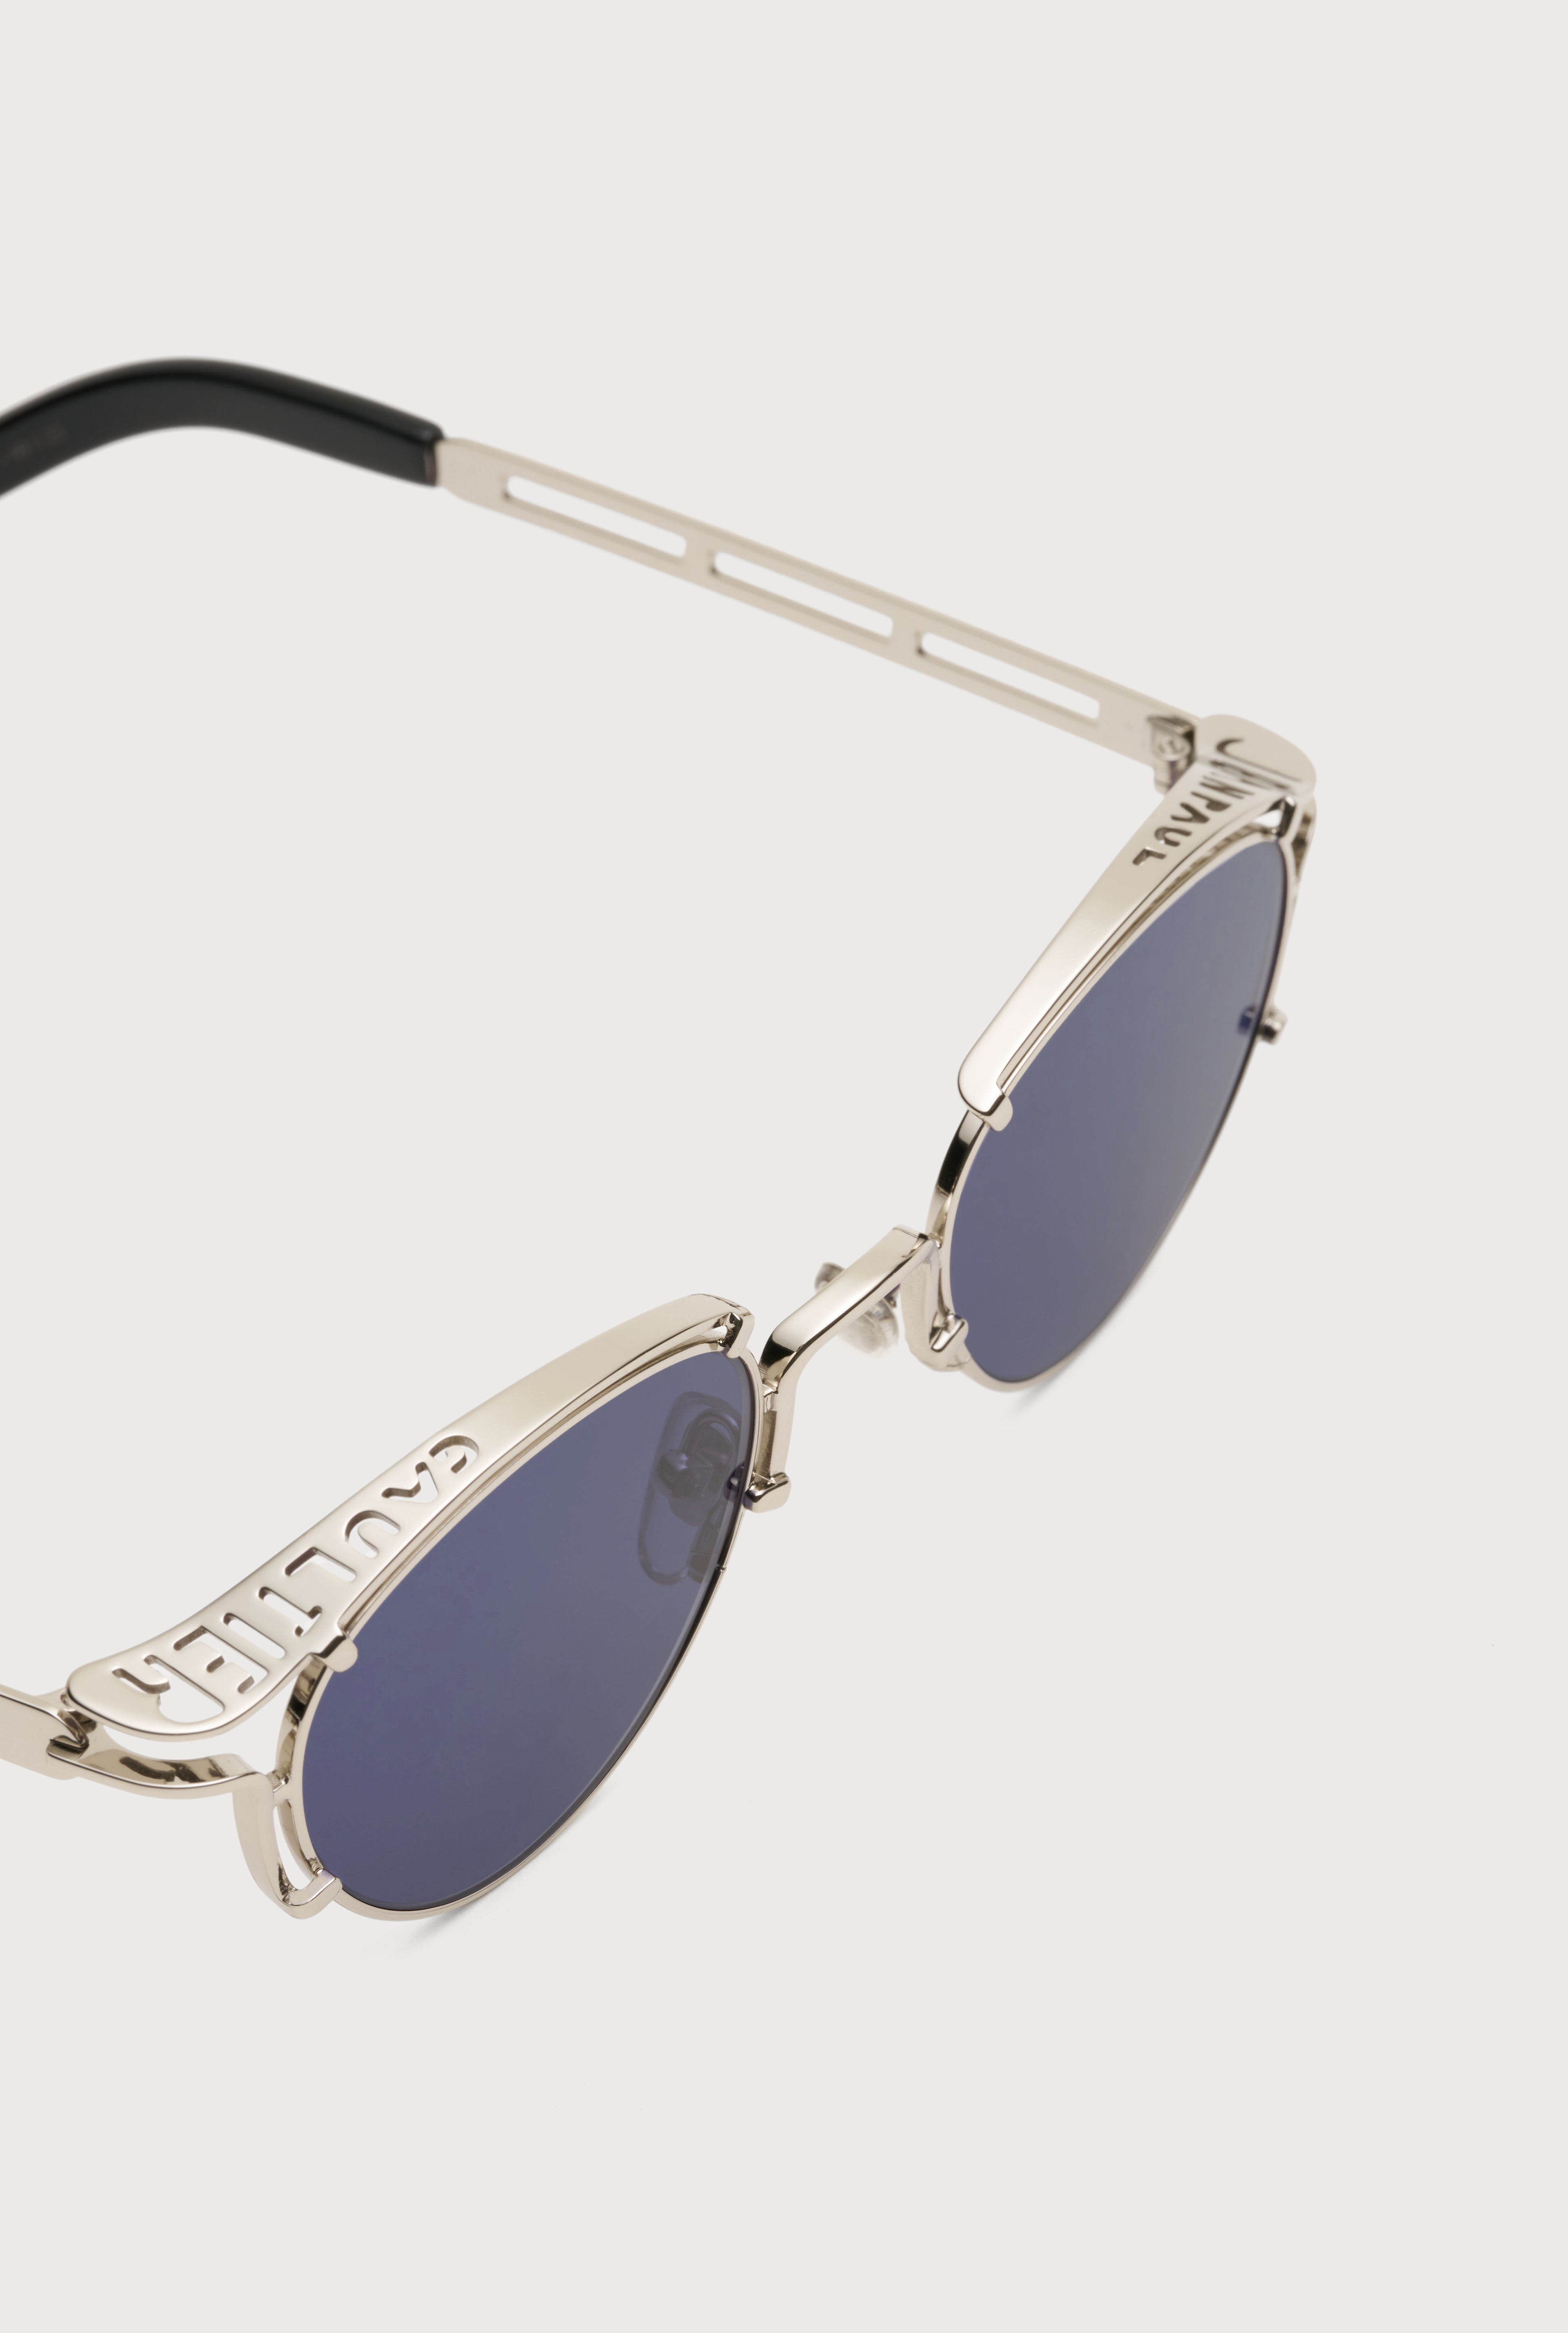 The Silver 56-5102 Sunglasses